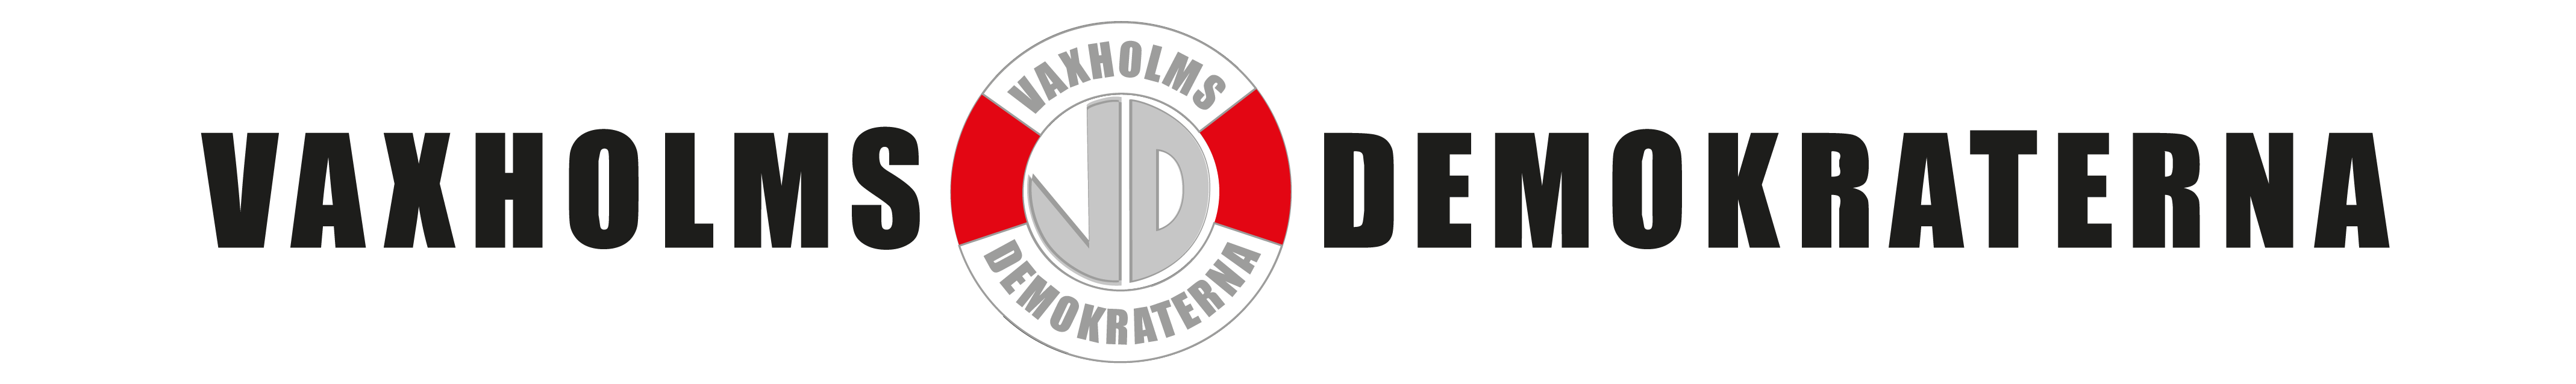 Avregistrerad partibeteckning med symbol för Vaxholmsdemokraterna.